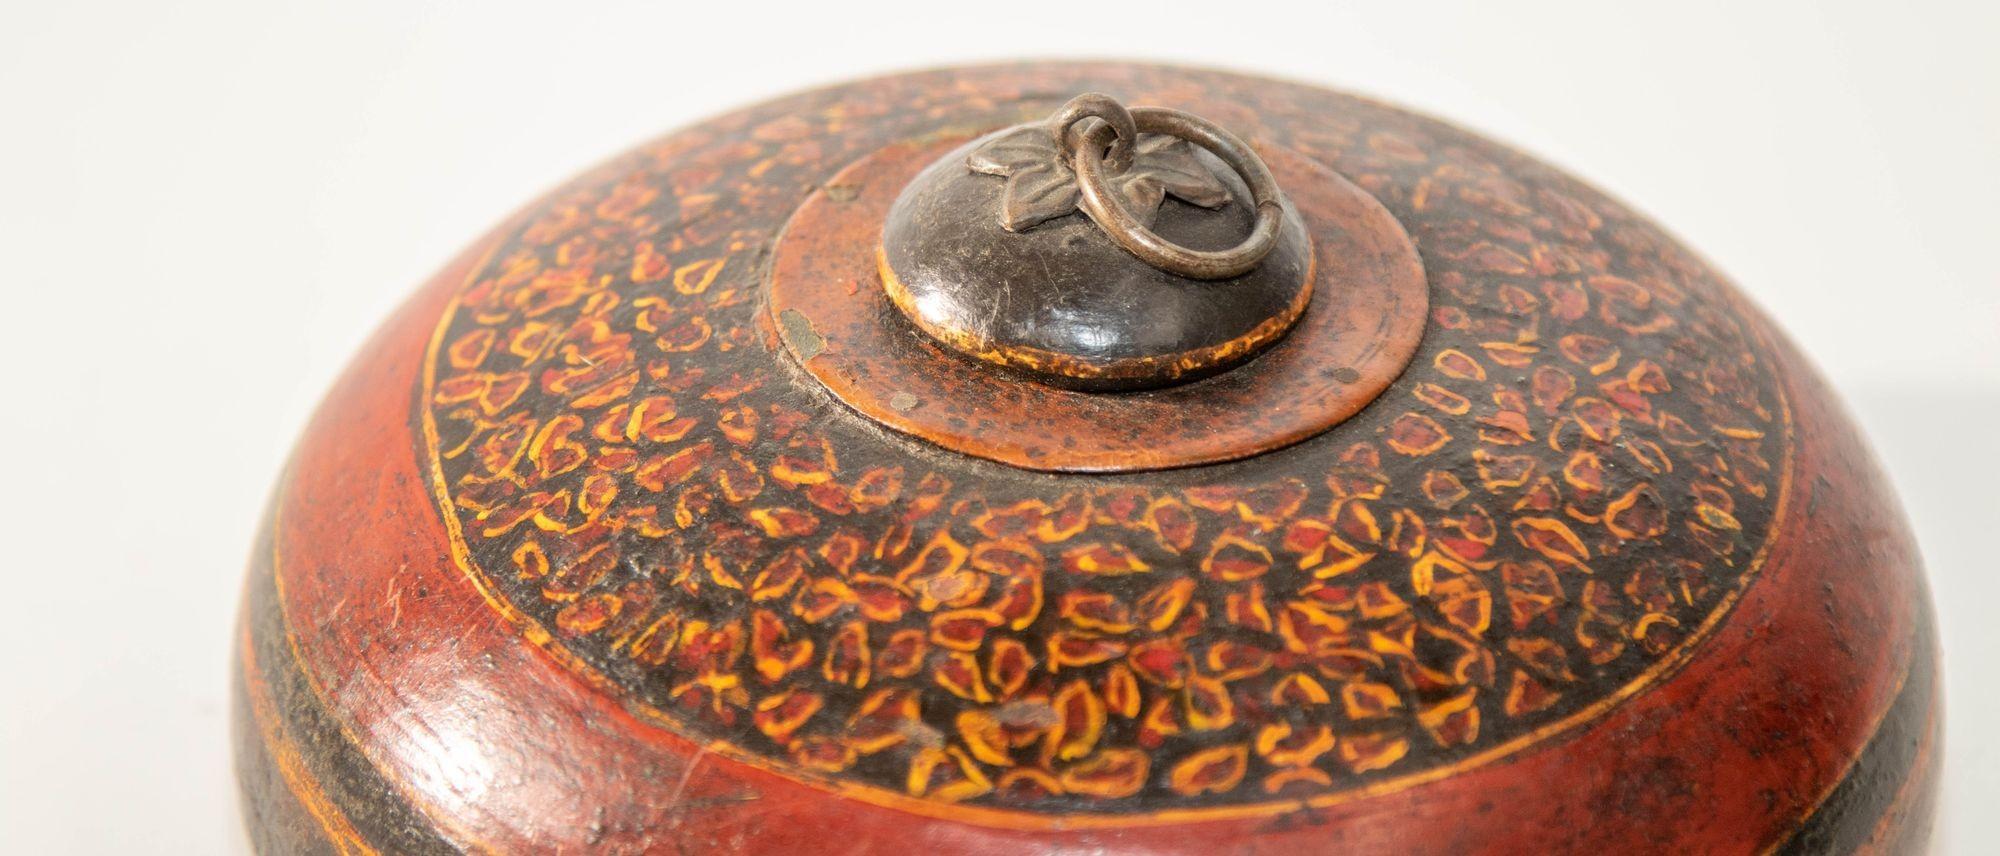 Dekorativer antiker asiatischer runder Holzbehälter mit Deckel und Messinggriff.
Vintage Sammler asiatischen hölzernen Tabak oder Opium runden Behälter.
Opiumbehälter mit rundem Deckel, handgefertigte und handbemalte Holzkiste mit